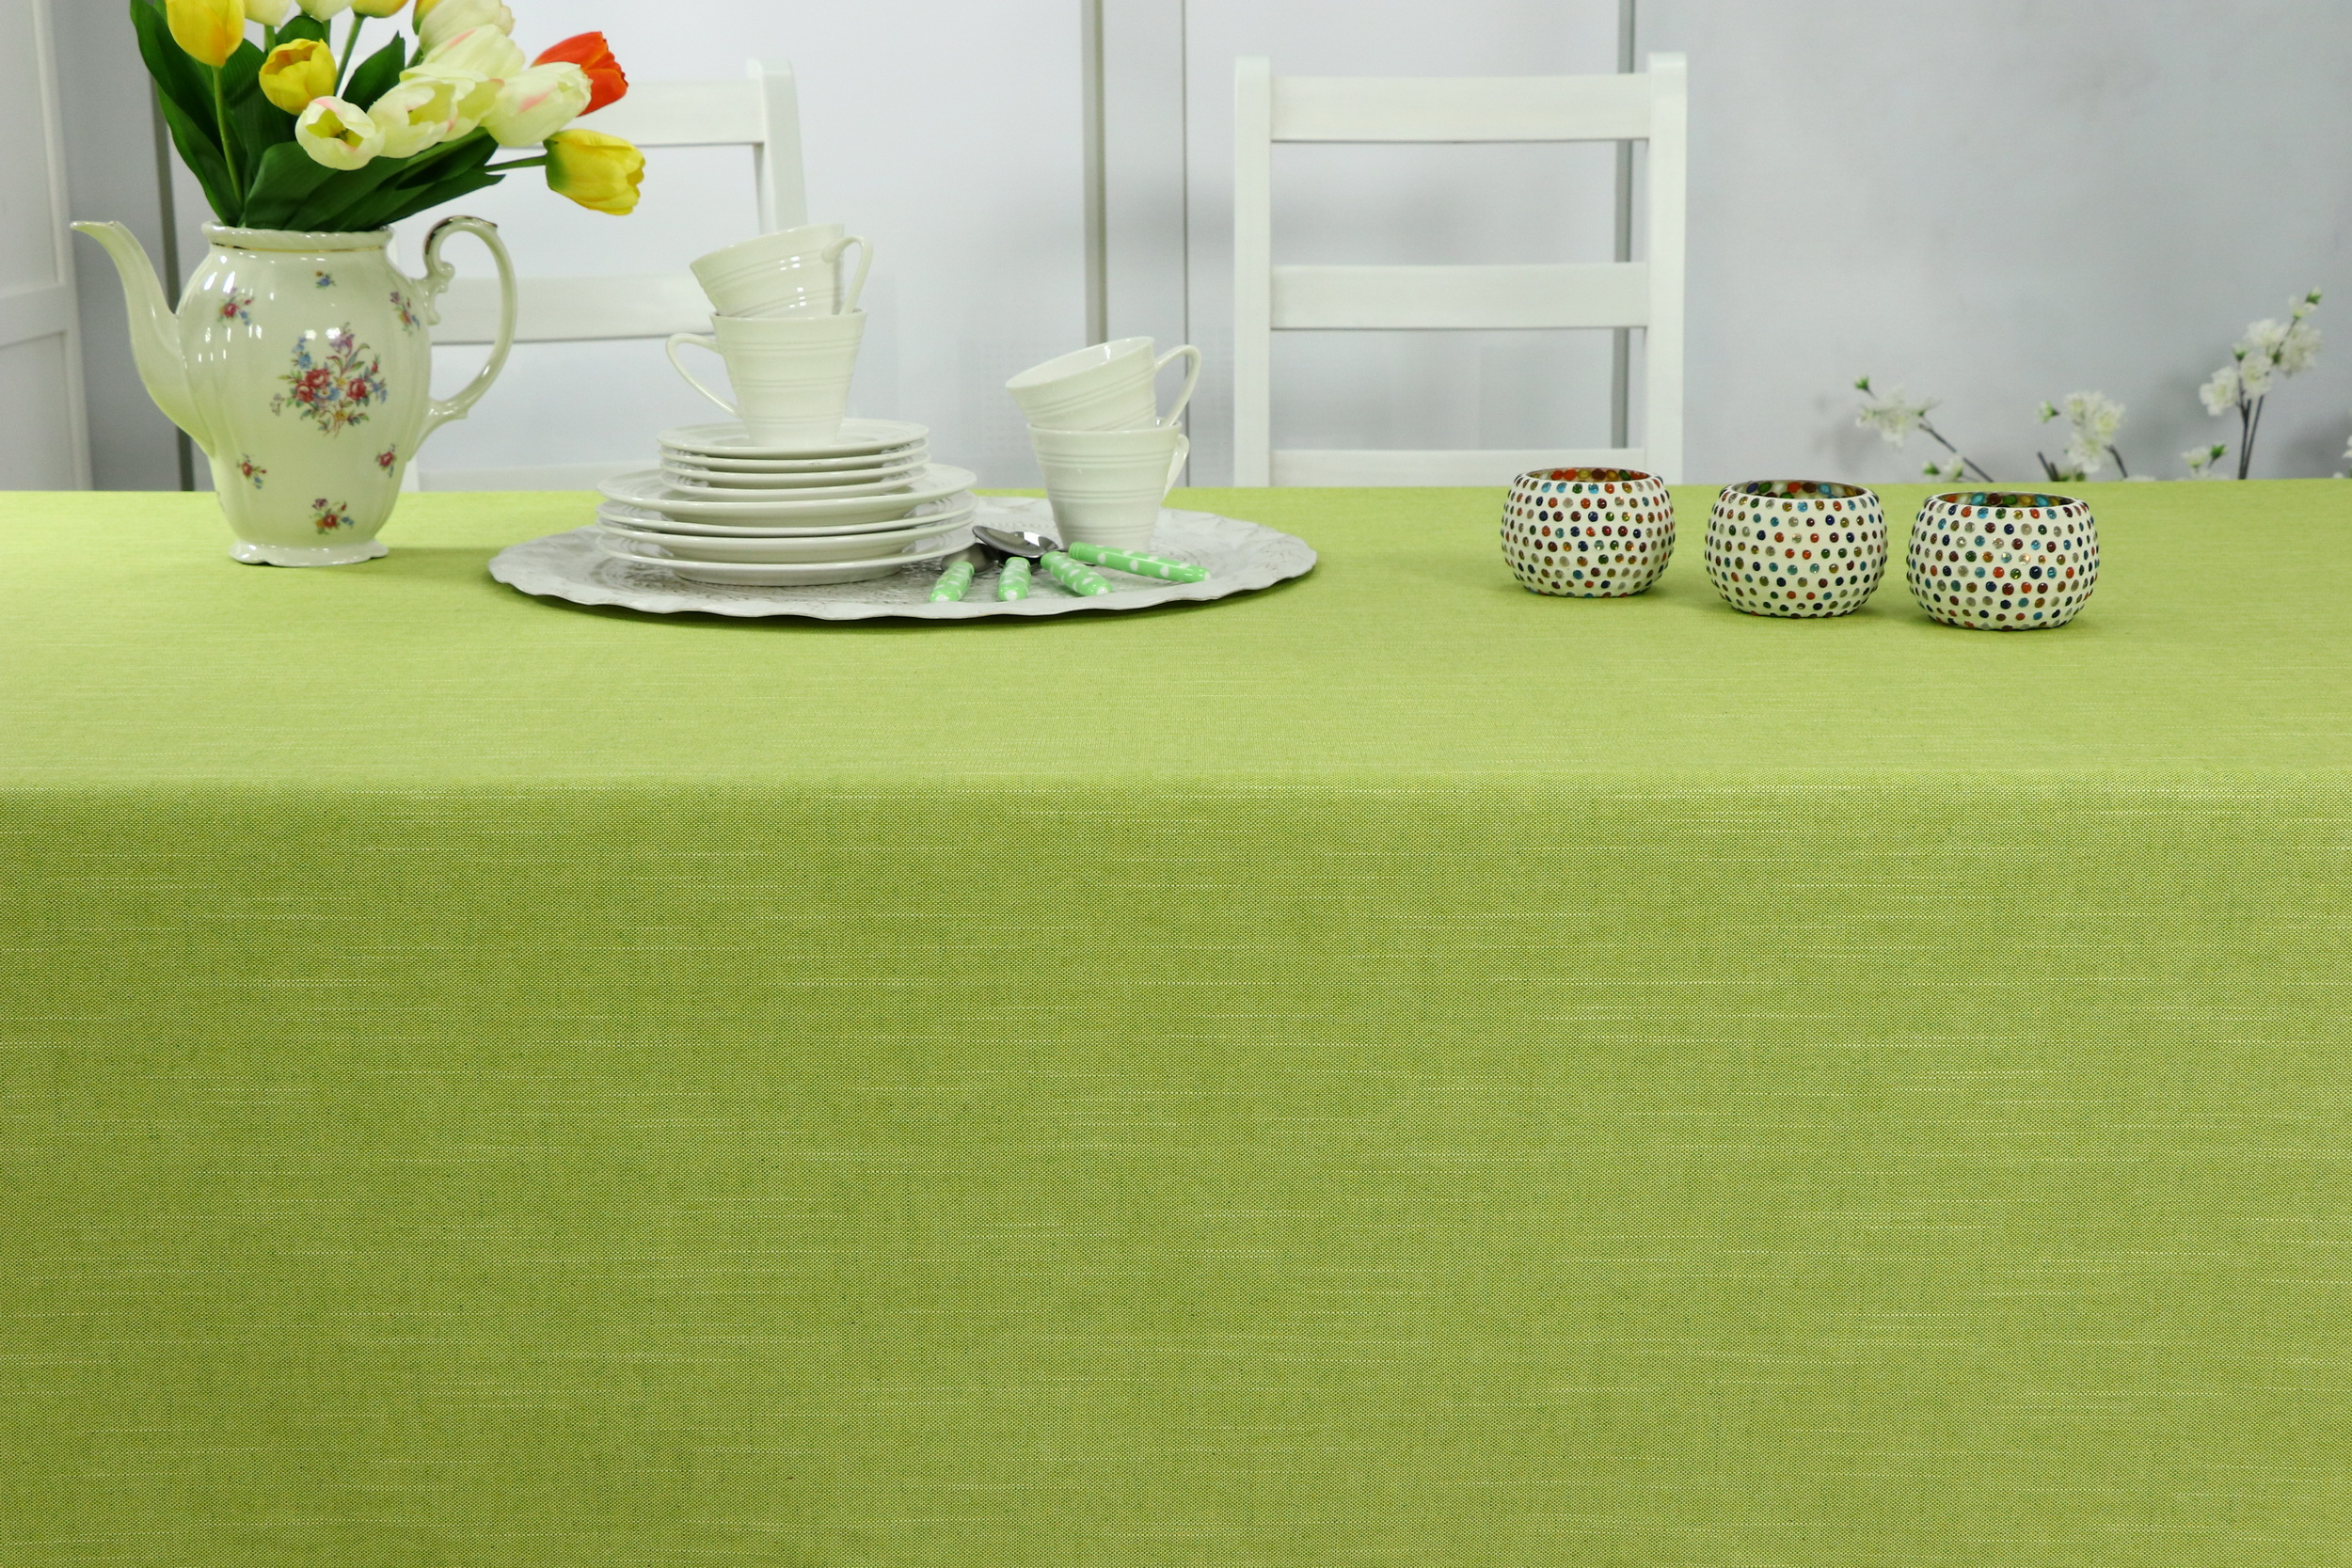 Tischdecke Mai-Grün abwaschbar: Abwischen und sauber: Es ist so einfach! |  TiDeko® Tischdecken-Shop.de. Tischdecken Markenqualität